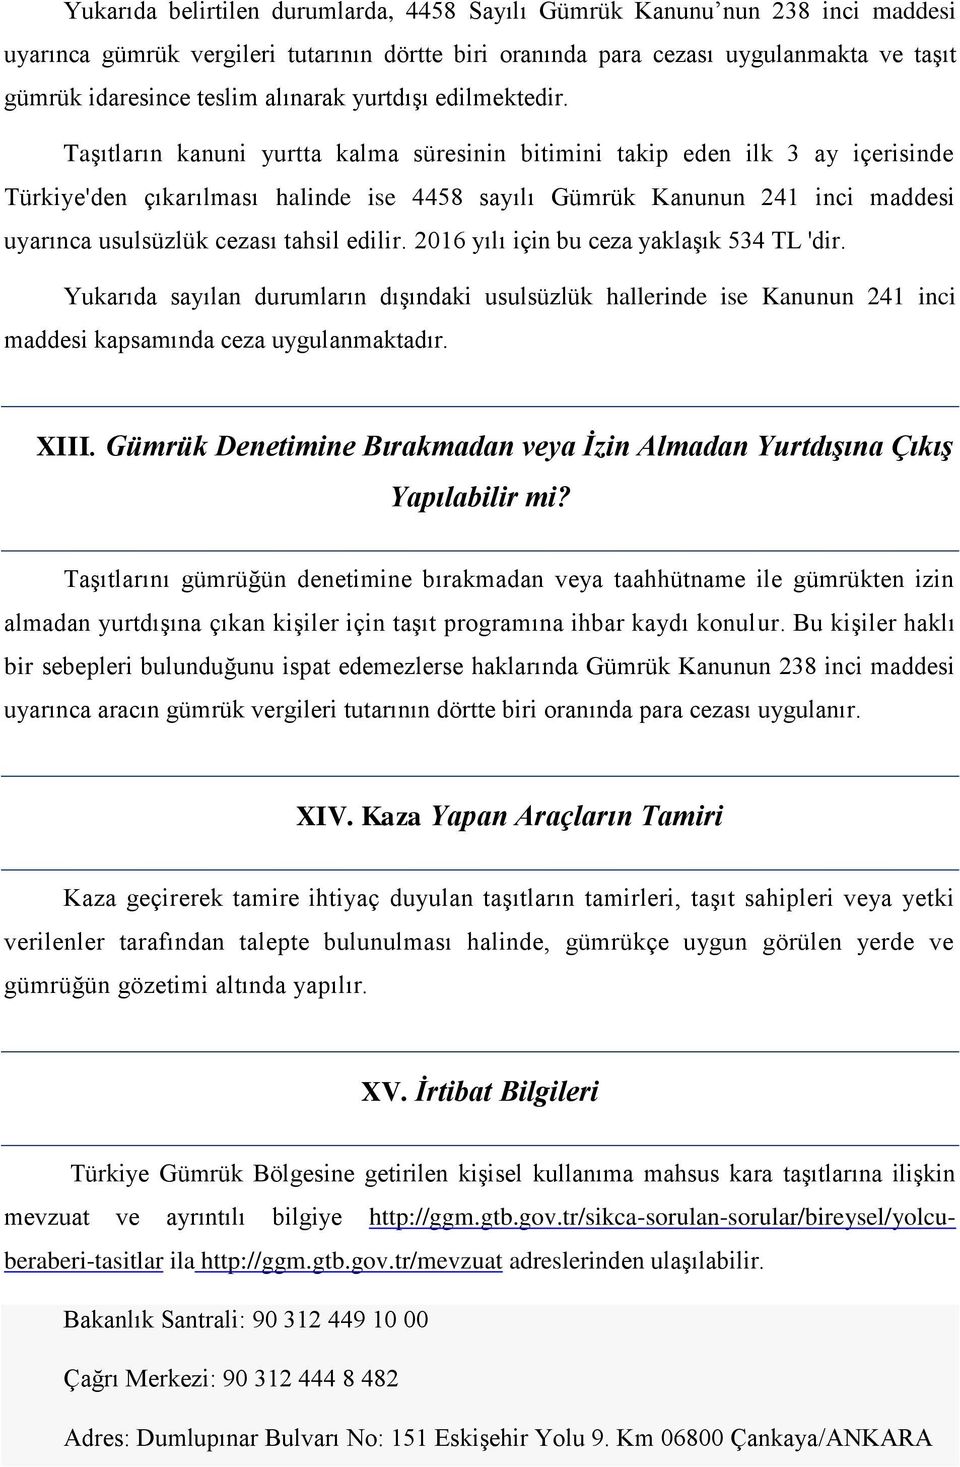 Taşıtların kanuni yurtta kalma süresinin bitimini takip eden ilk 3 ay içerisinde Türkiye'den çıkarılması halinde ise 4458 sayılı Gümrük Kanunun 241 inci maddesi uyarınca usulsüzlük cezası tahsil